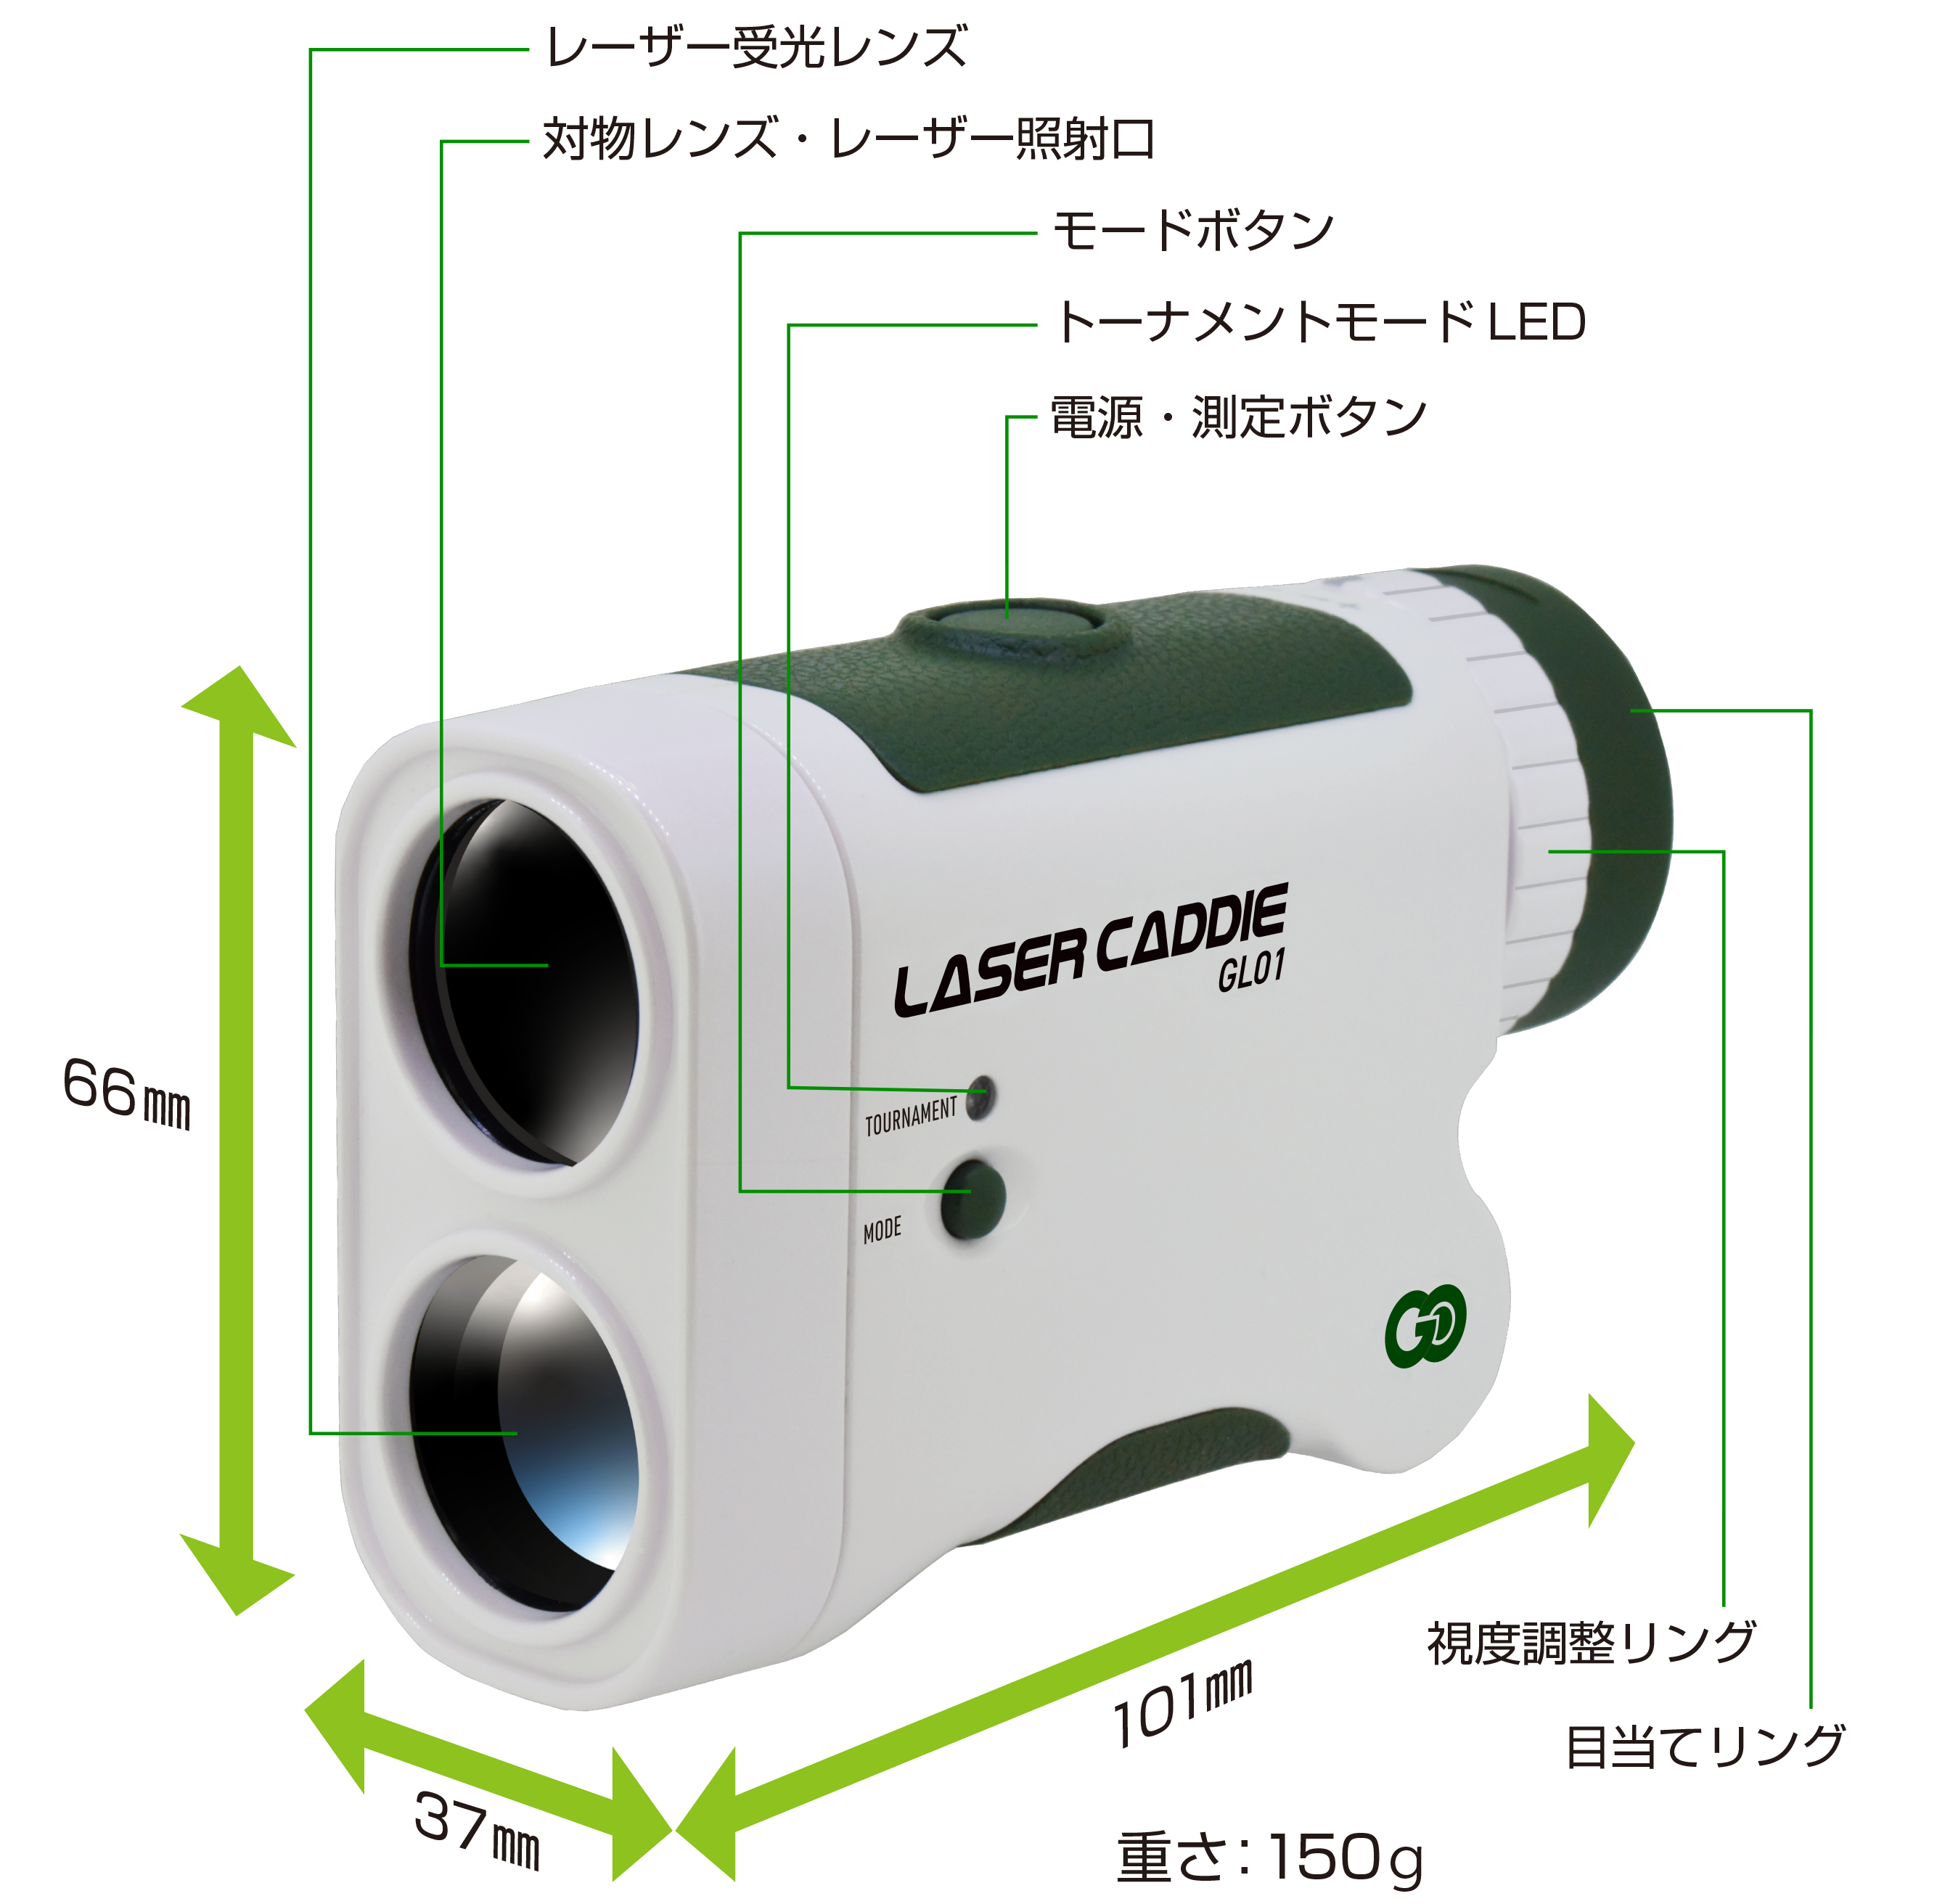 レーザーキャディー GL01 – LASER CADDIE GL01 | GREENON